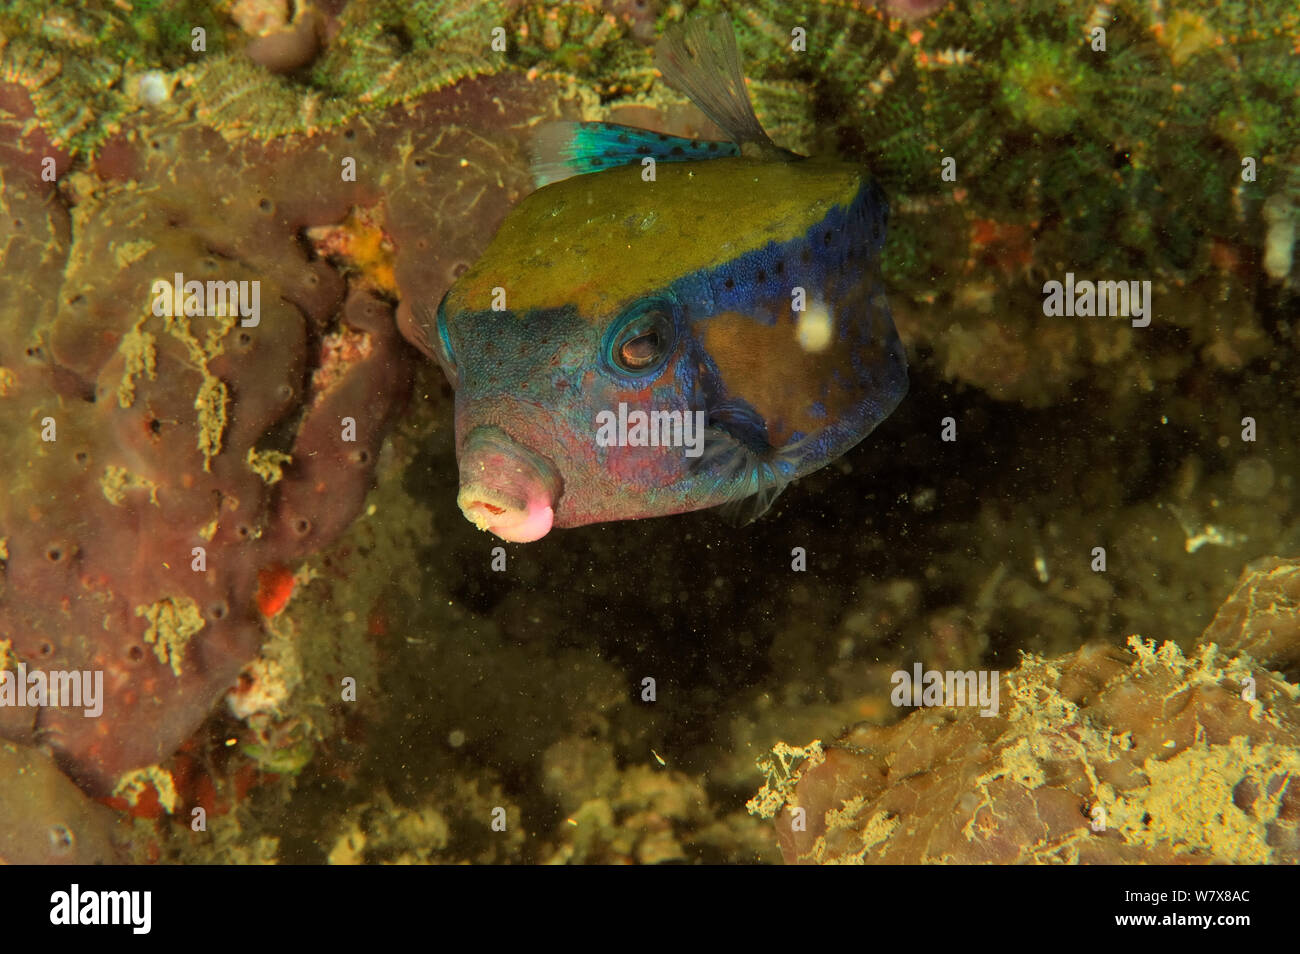 Bluetail trunkfish / boxfish (Ostracion cyanurus), Daymaniyat islands, Oman. Gulf of Oman. Stock Photo